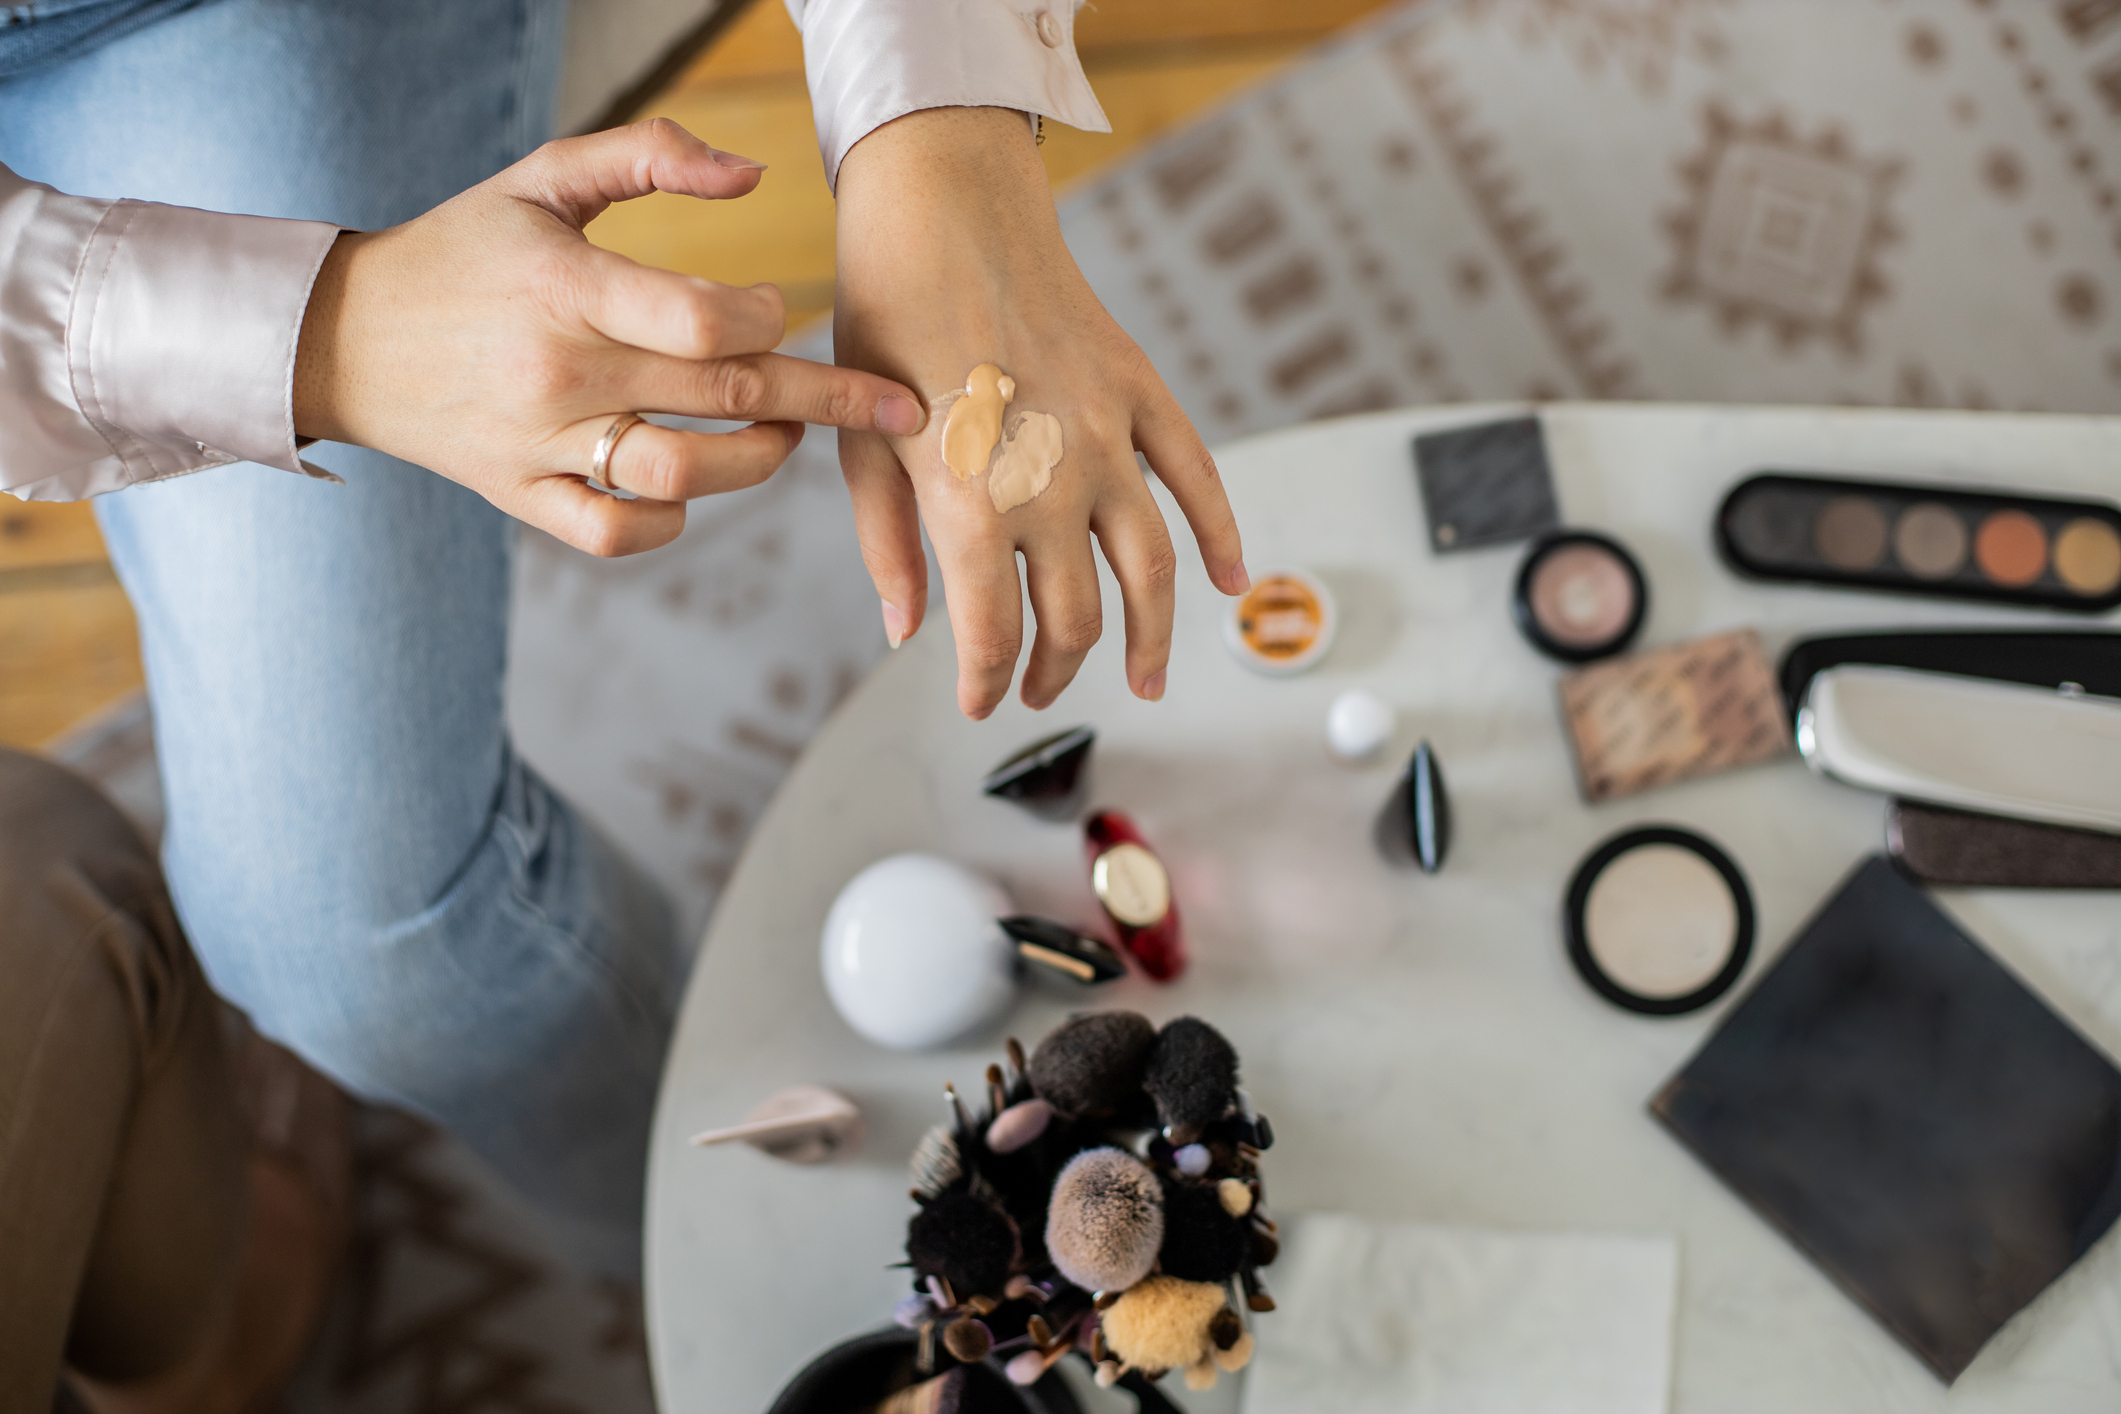 Makeup täglich tragen: So giftig und schädlich ist es laut Studien - wmn